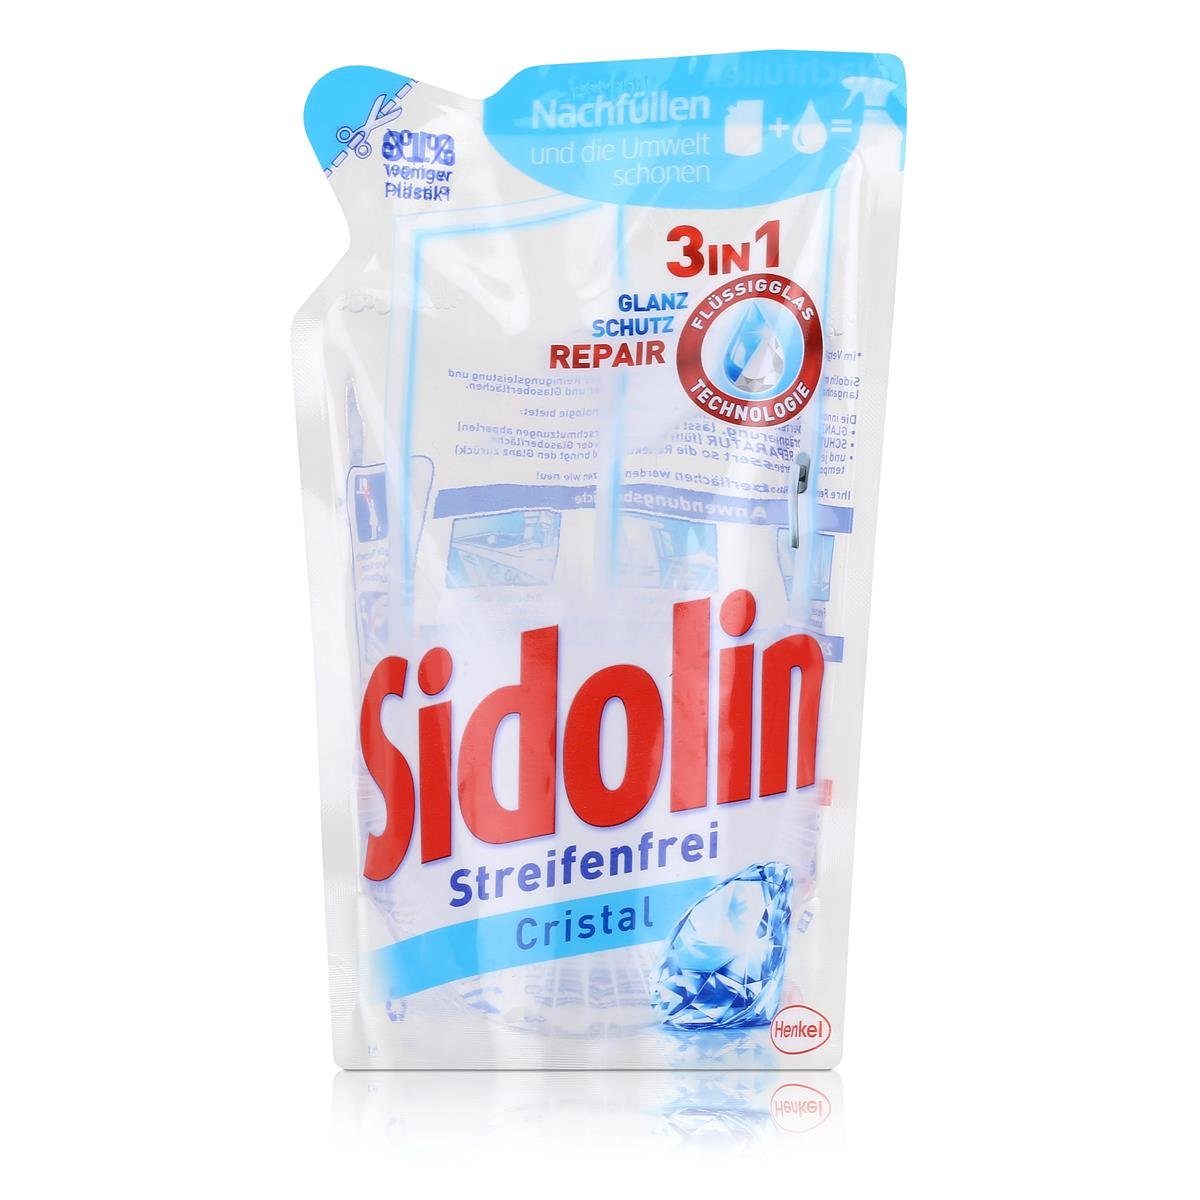 SIDOLIN Sidolin Streifenfrei Cristal Nachfüller (1er 250ml Glasreiniger Glasreiniger Pack 